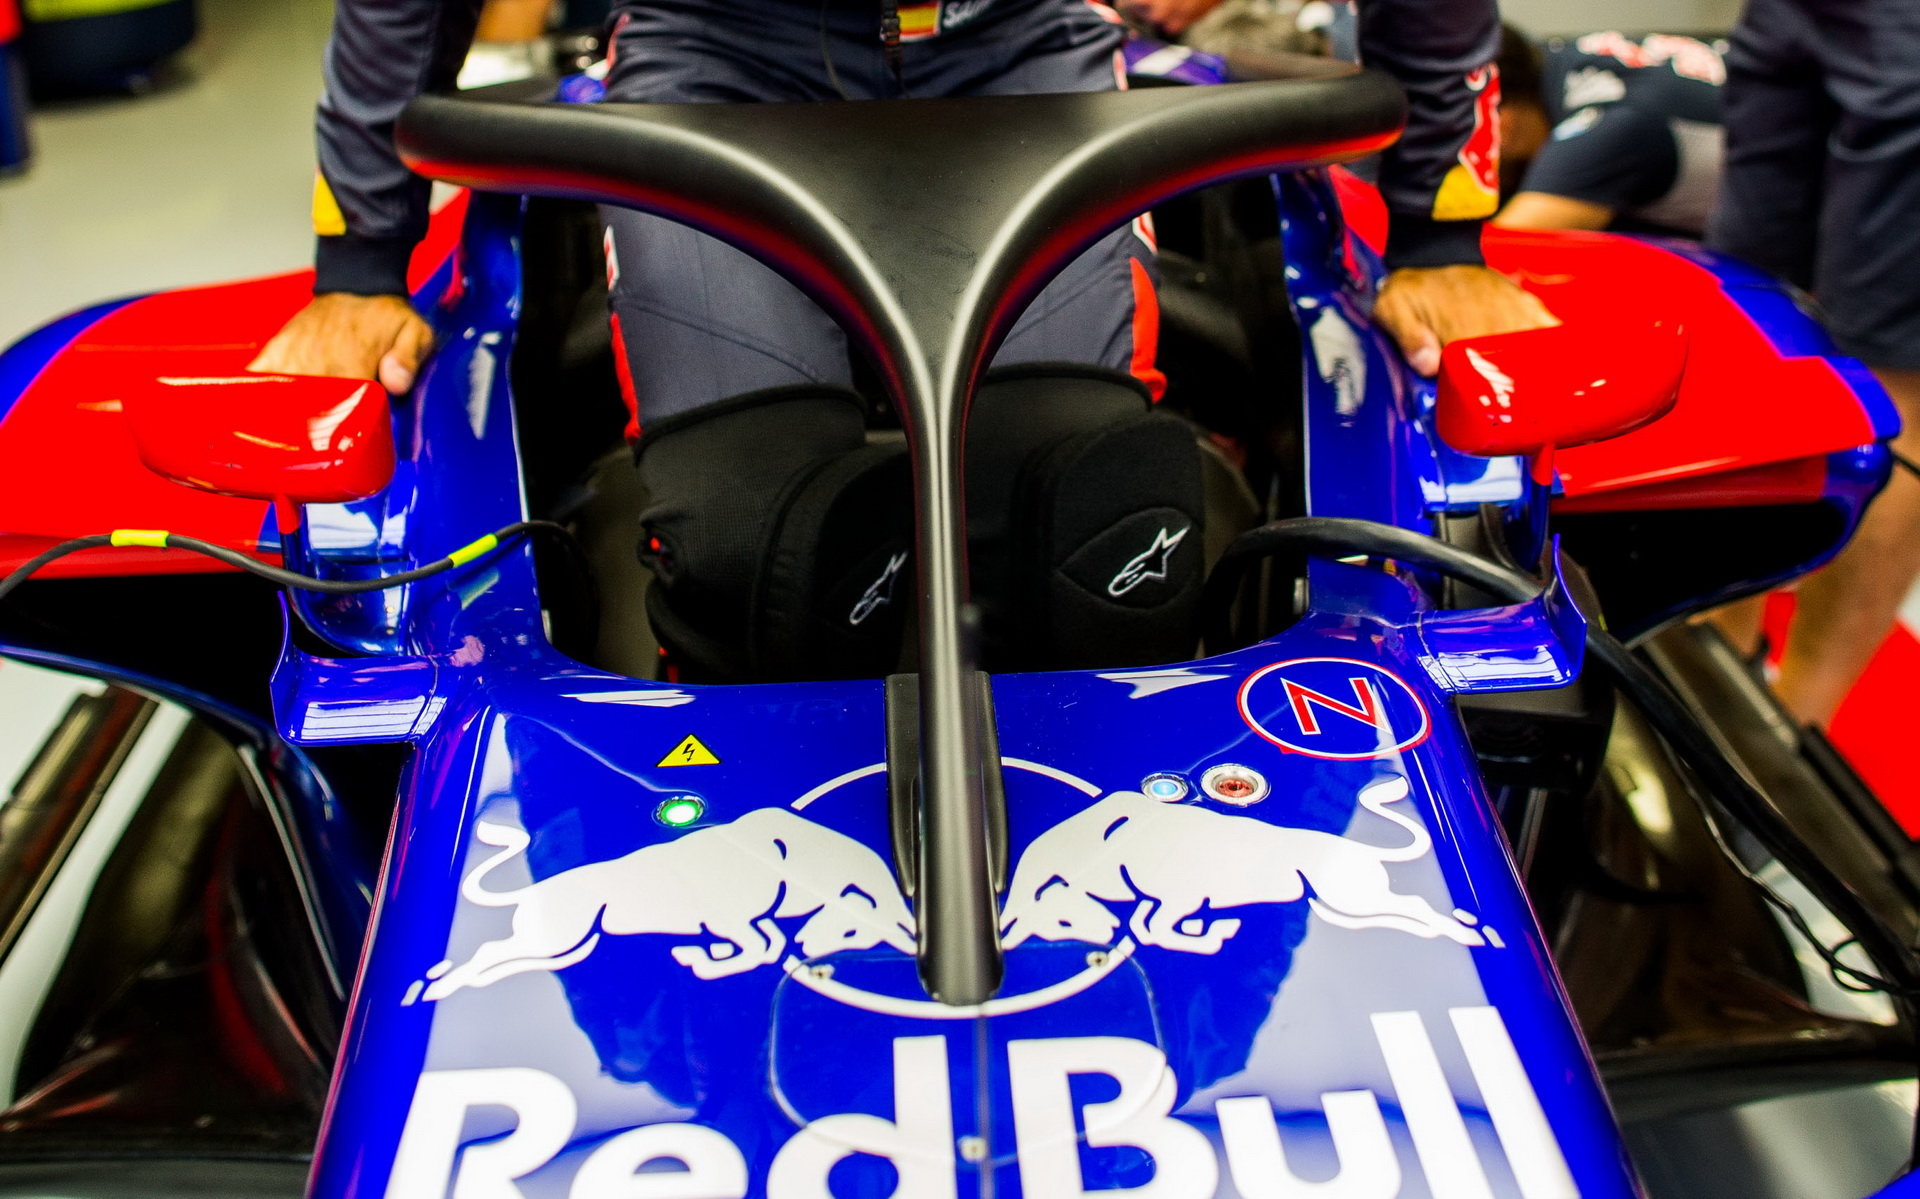 Ochrana kokpitu na voze Toro Rosso STR12 - Renault při tréninku v Itálii